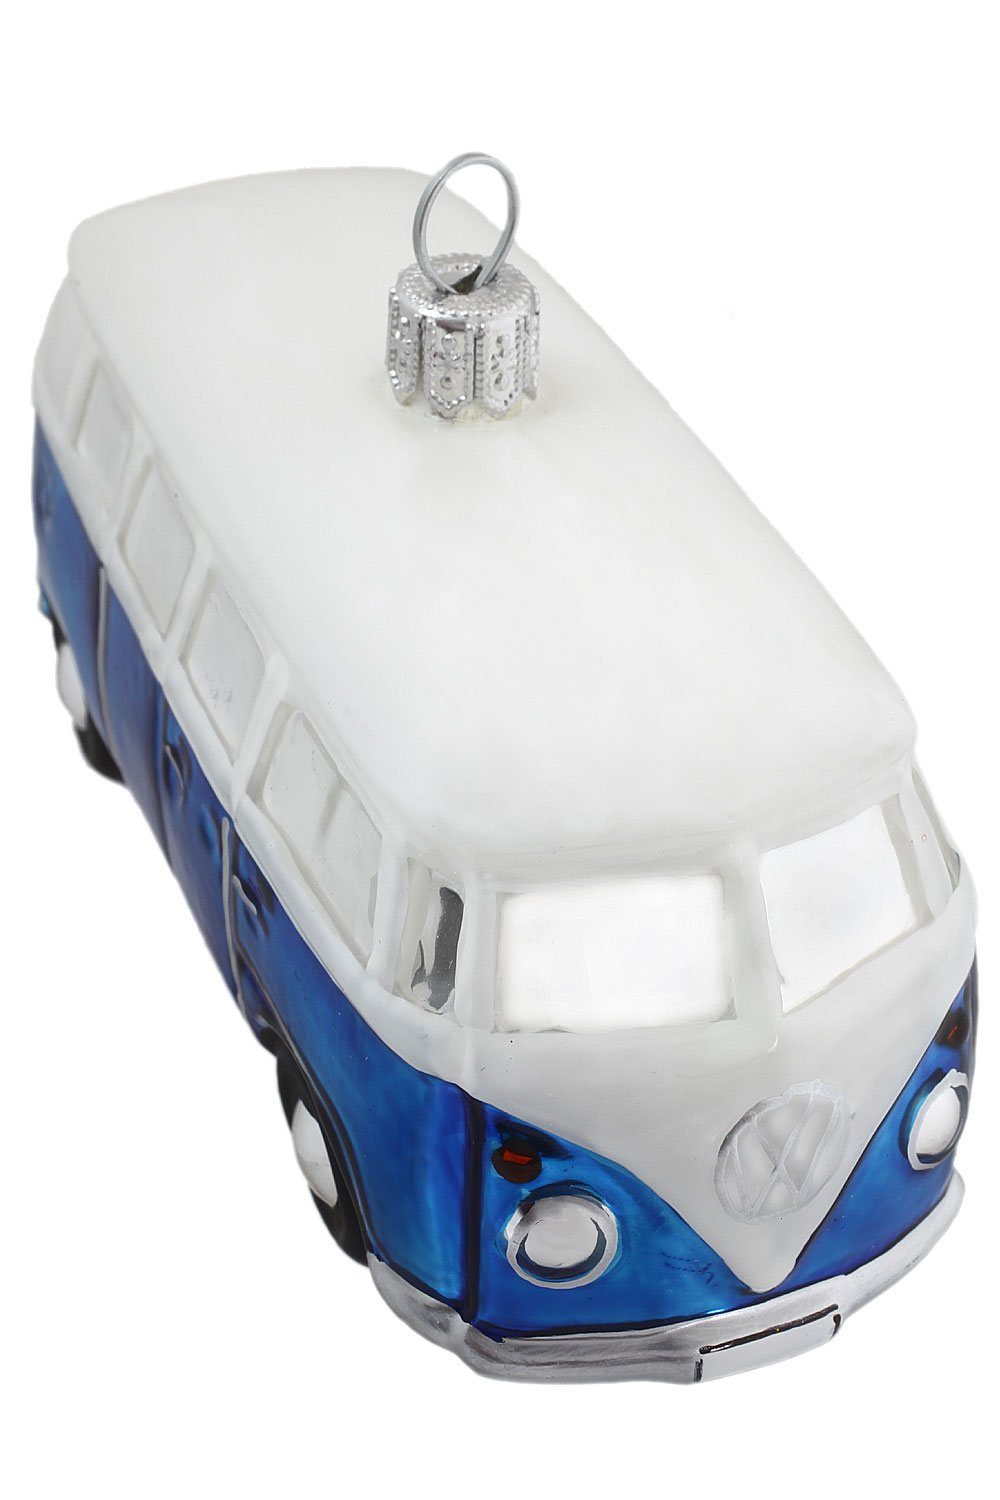 blau Bus - - mundgeblasen Licensed VW Official handdekoriert Weihnachtskontor Produkt, Hamburger Dekohänger Christbaumschmuck